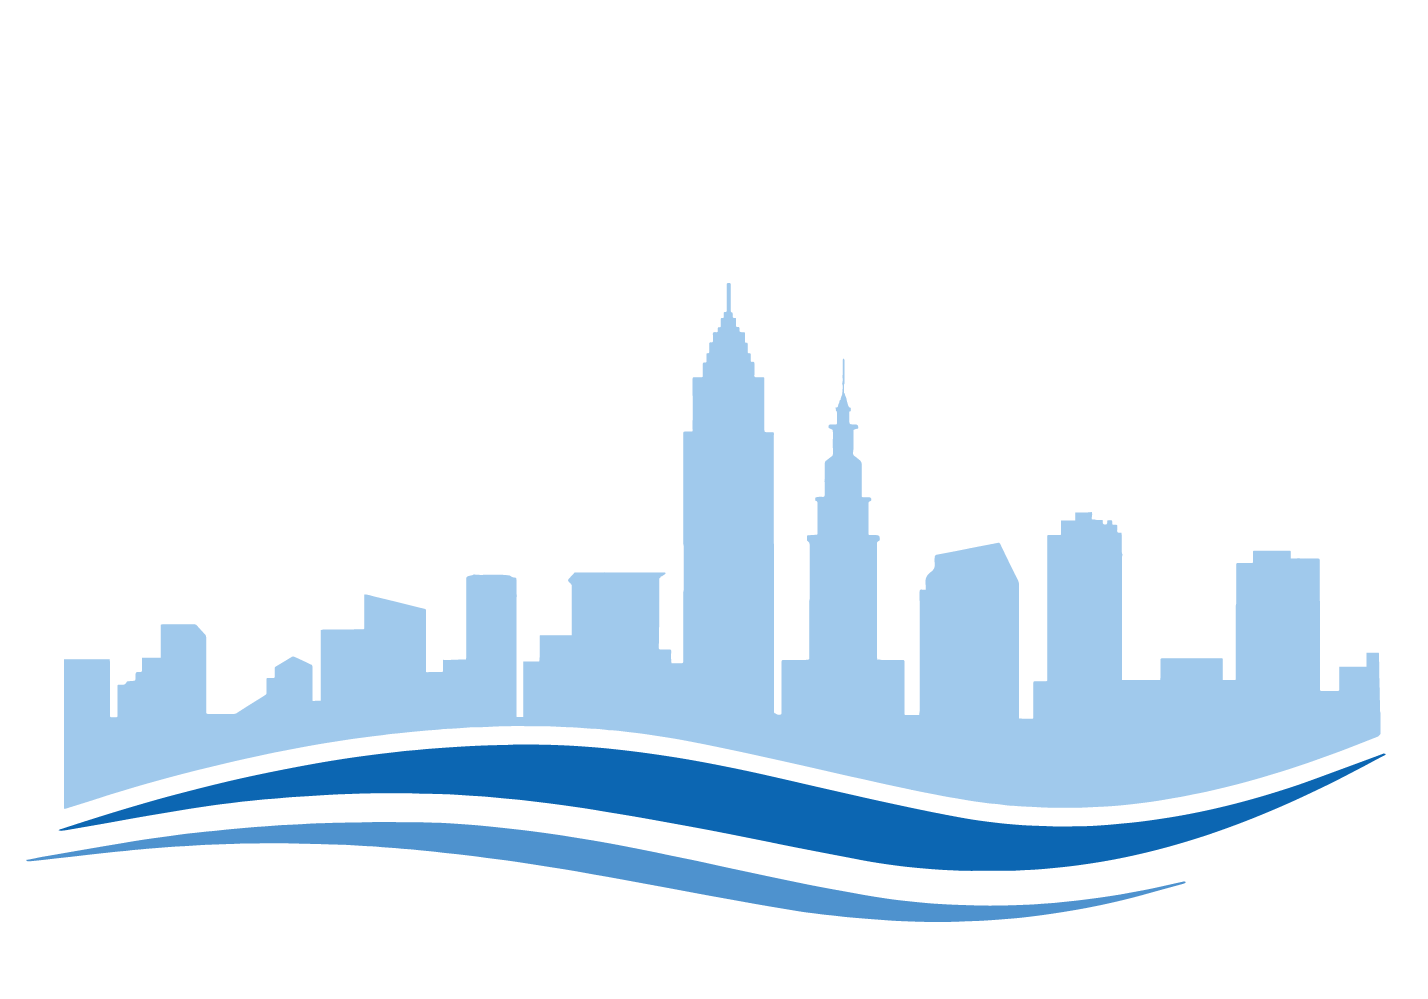 CCPC Logo